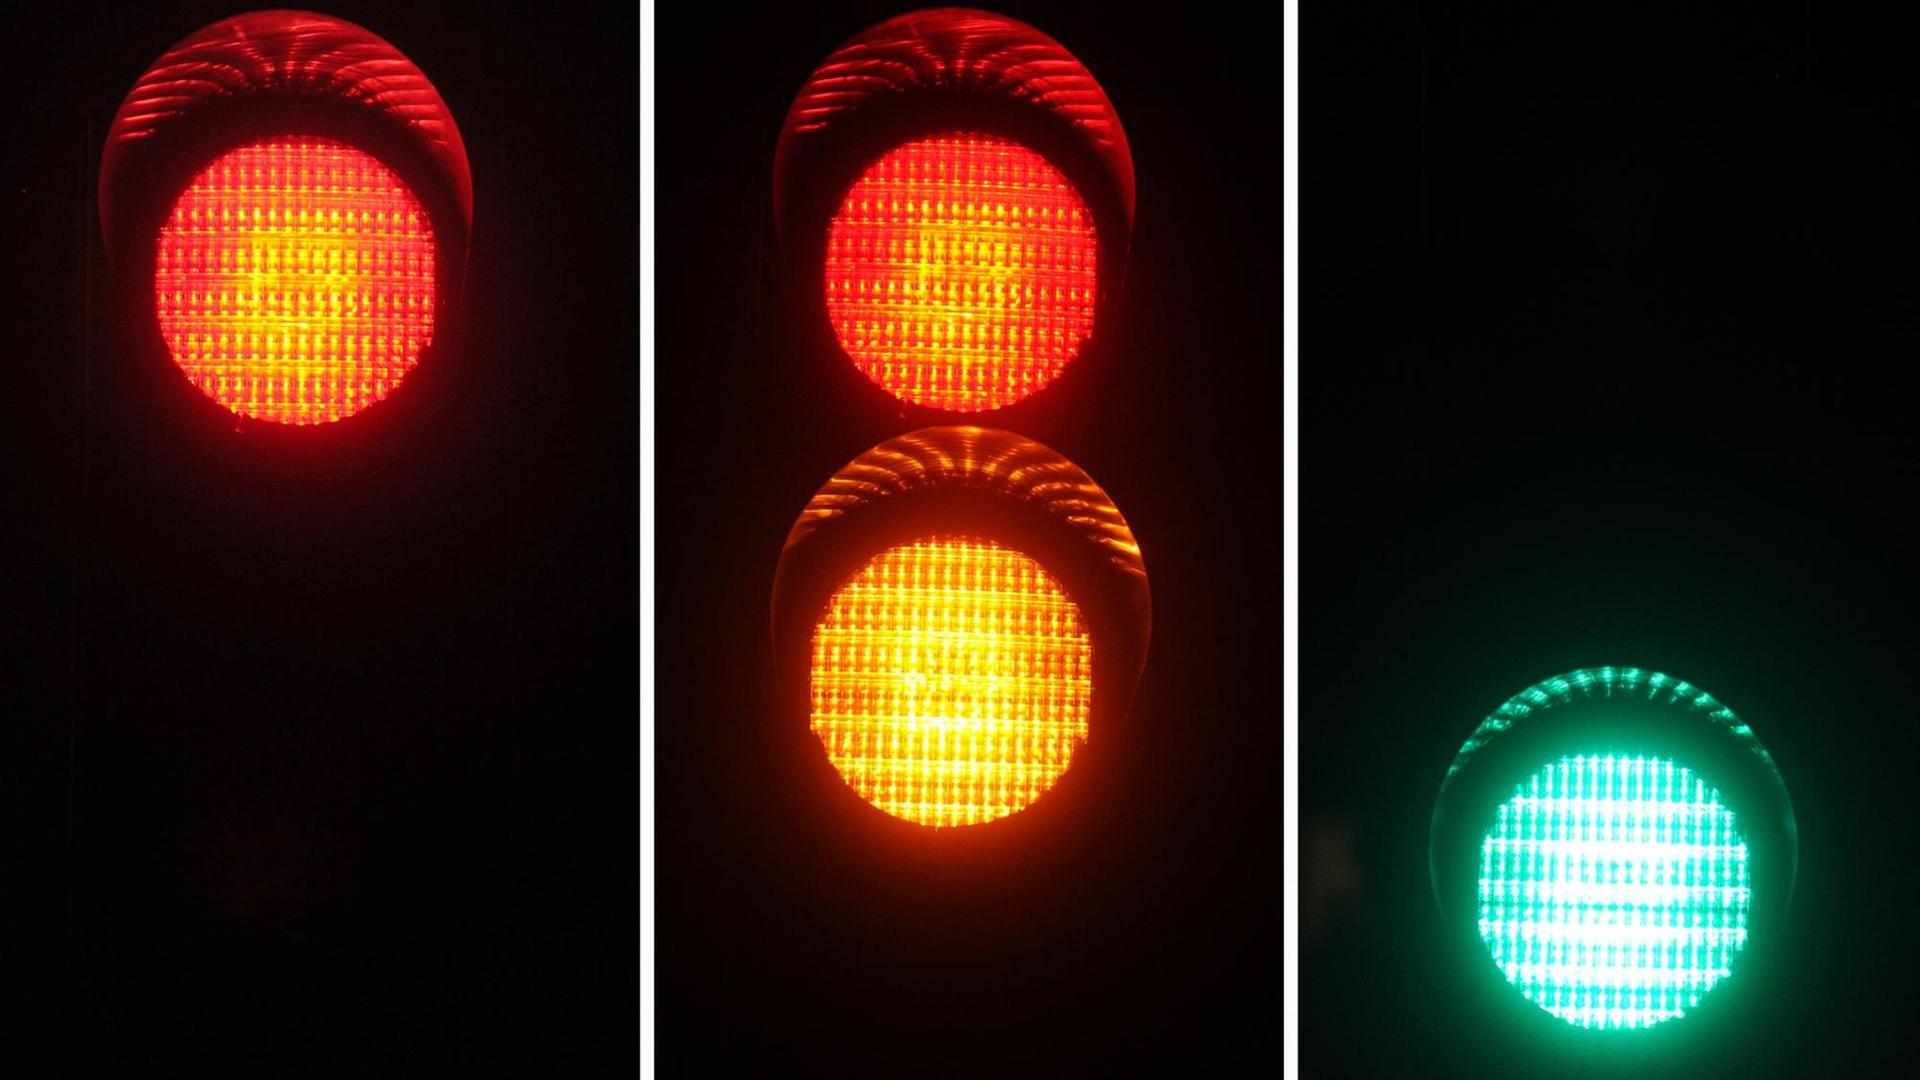 Rotes, rot-gelbes und grünes Ampellicht ist am Dienstag (03.01.2012) in München (Oberbayern) an einer Fußgängerampel bei Nacht zu sehen